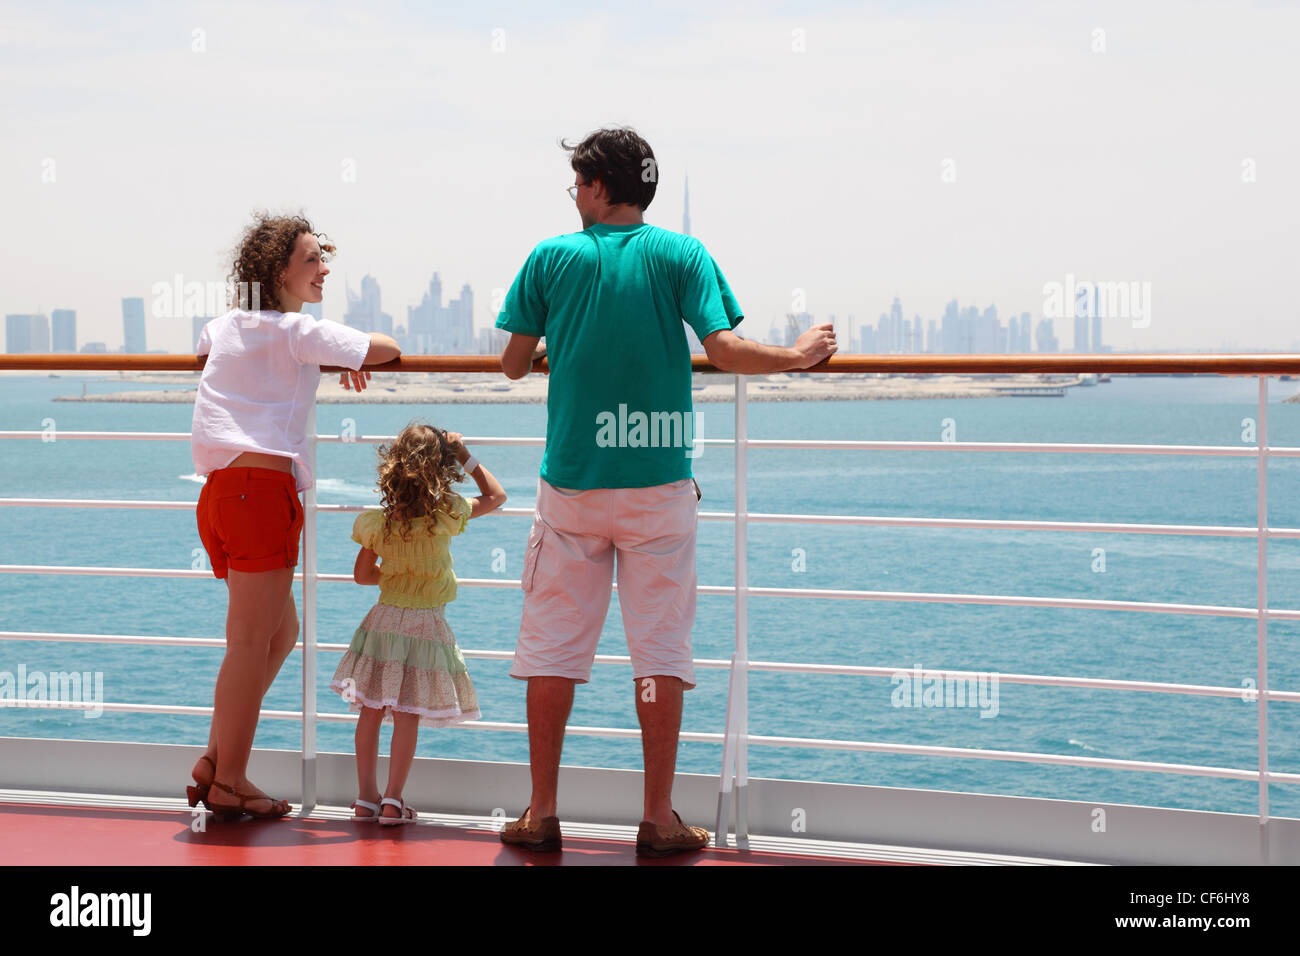 Famille avec fille debout sur un paquebot de croisière, le pont de vue de dos, ville à l'horizon Banque D'Images